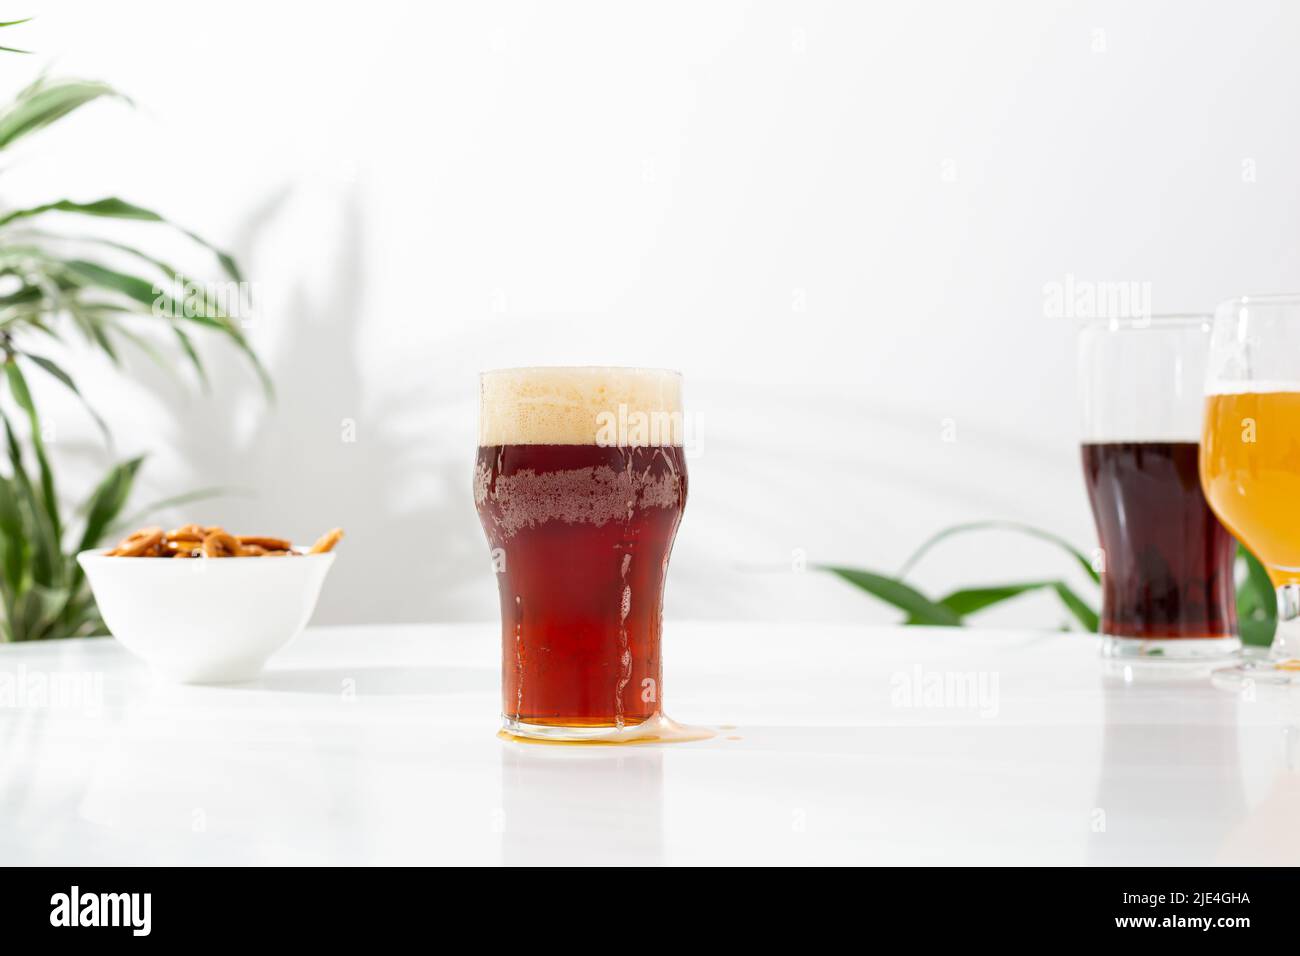 Uno spuntino artigianale al bicchiere con birra, uno spazio per fotocopie per l'oktoberfest Foto Stock